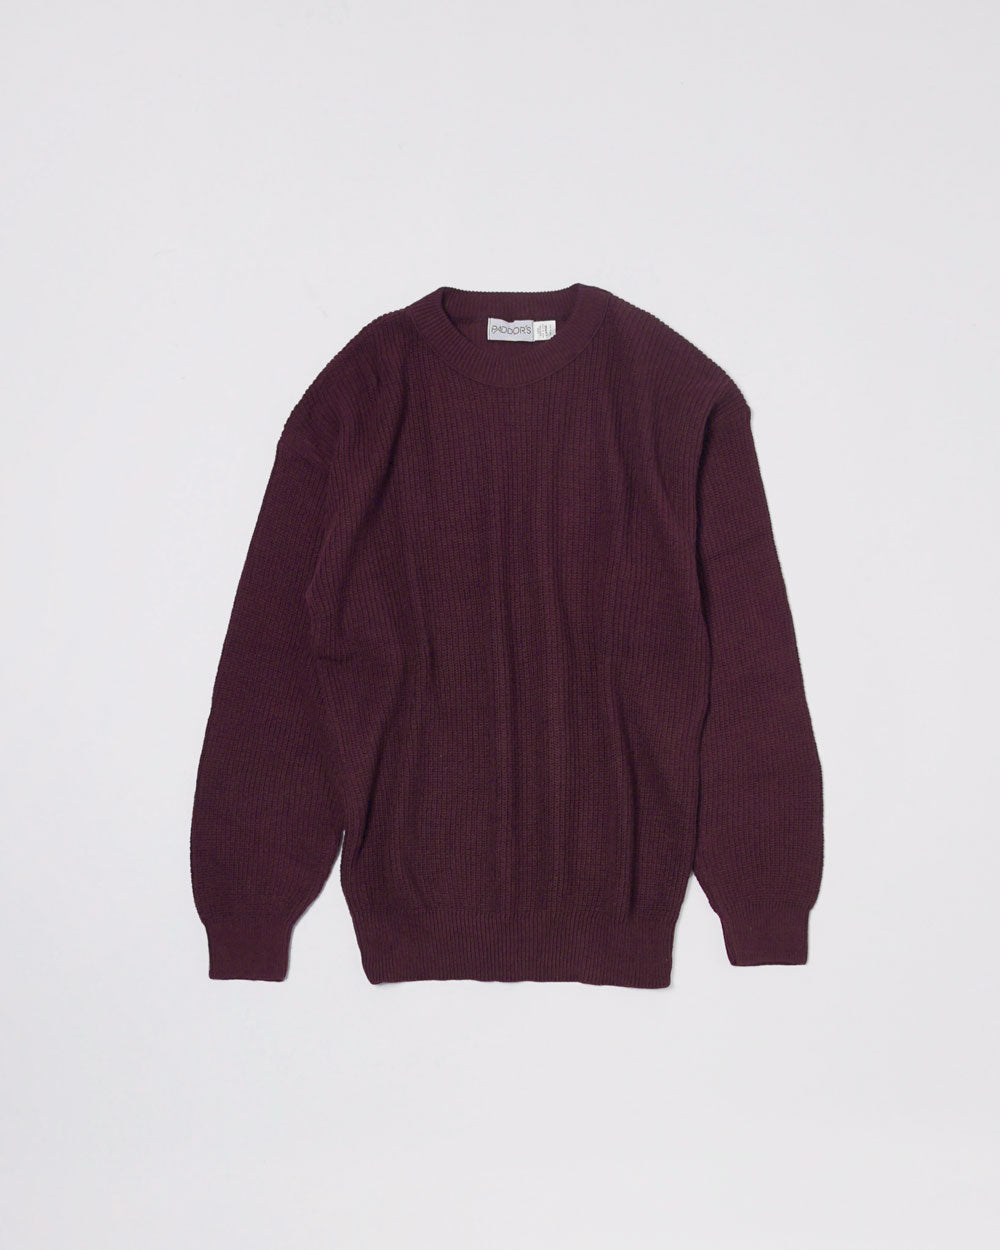 Paddor's Rib Sweater Crew Neck / Burgundy